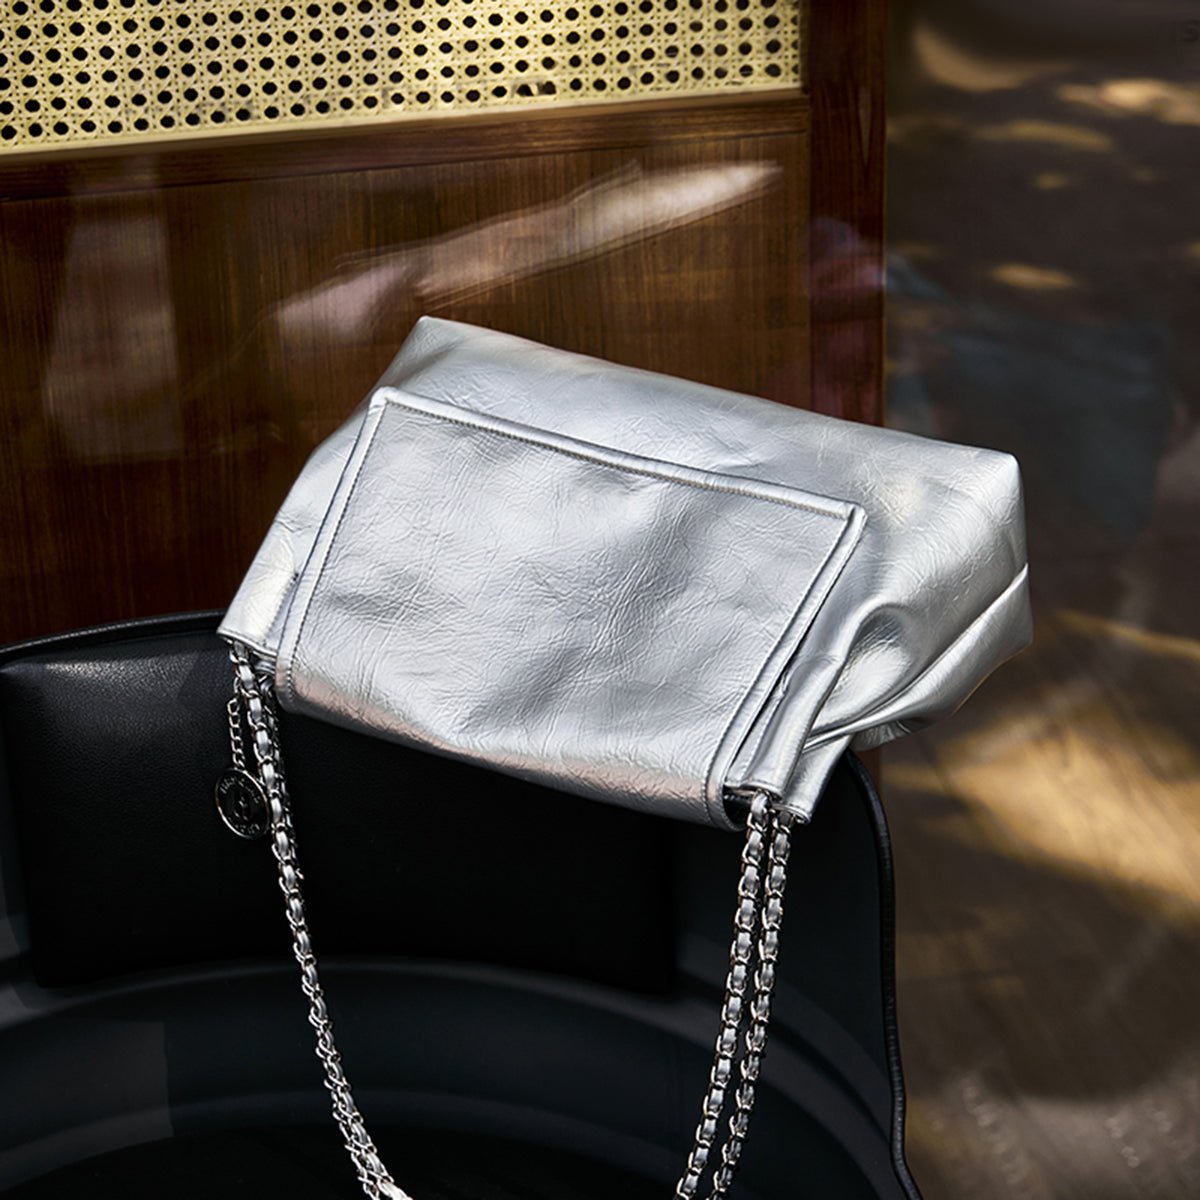 Sleek Chained Silver Shoulder Bag